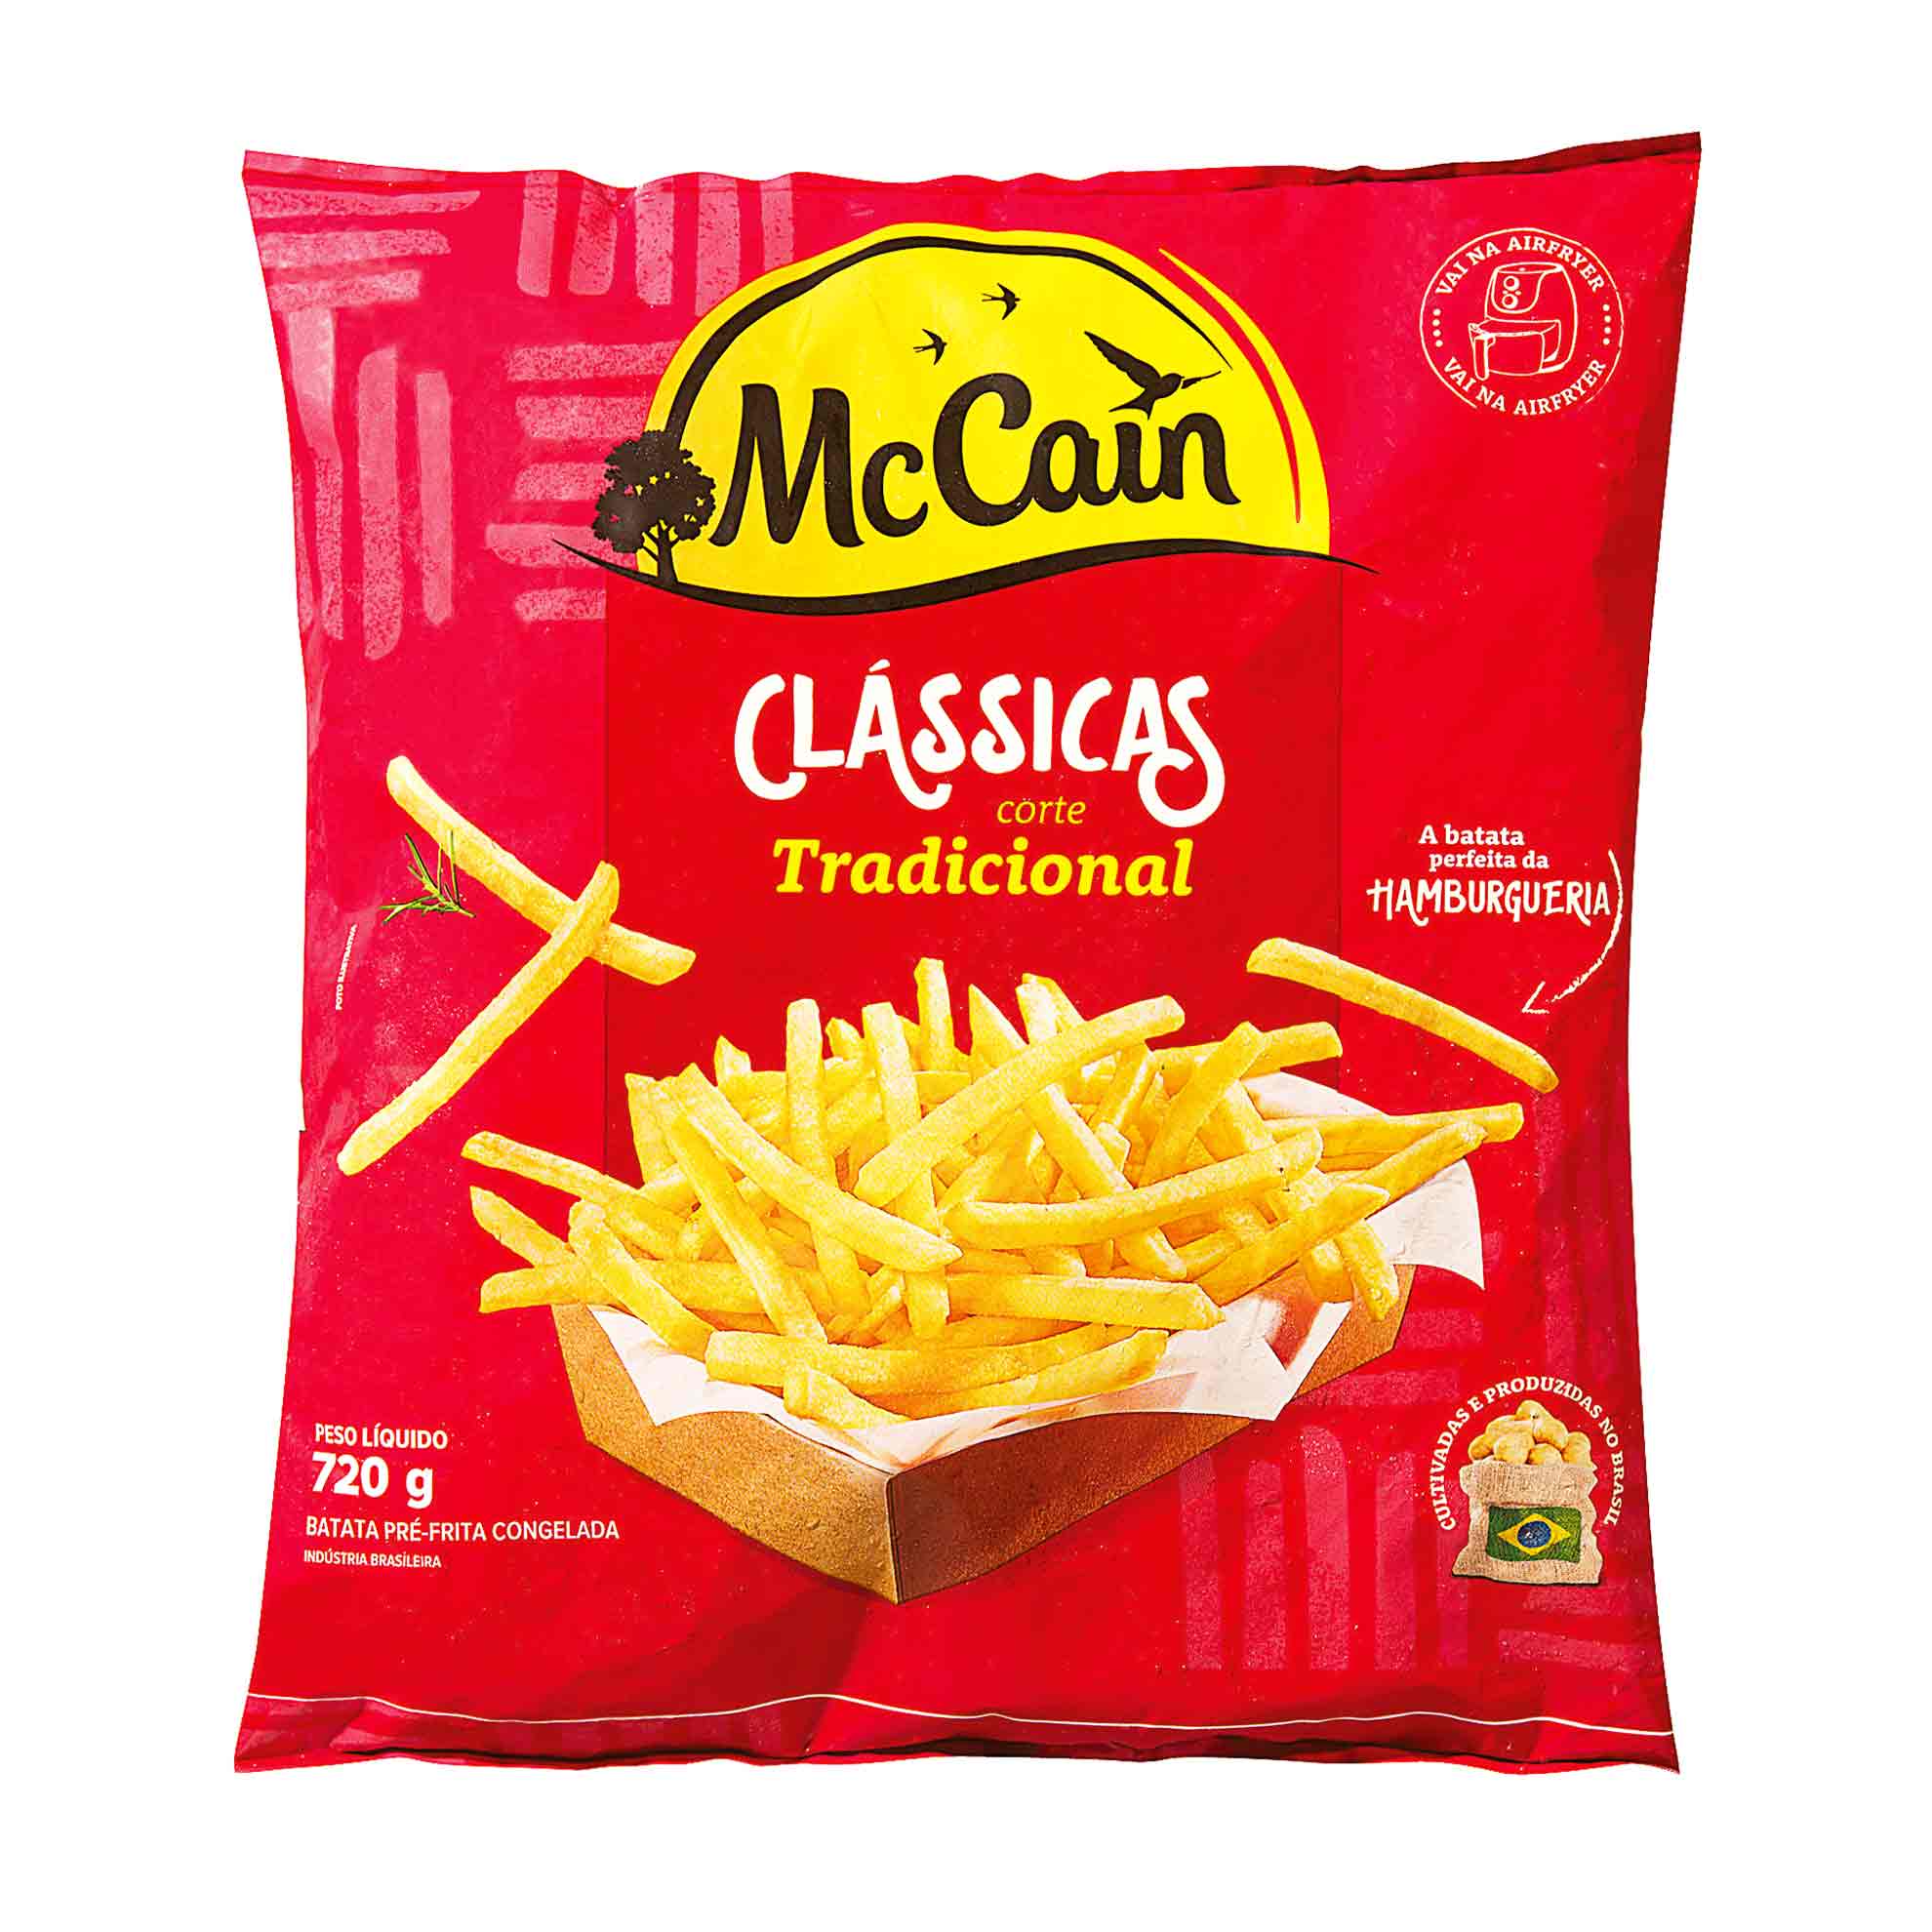 McCain lança batata frita especial para o delivery - Mercado&Consumo